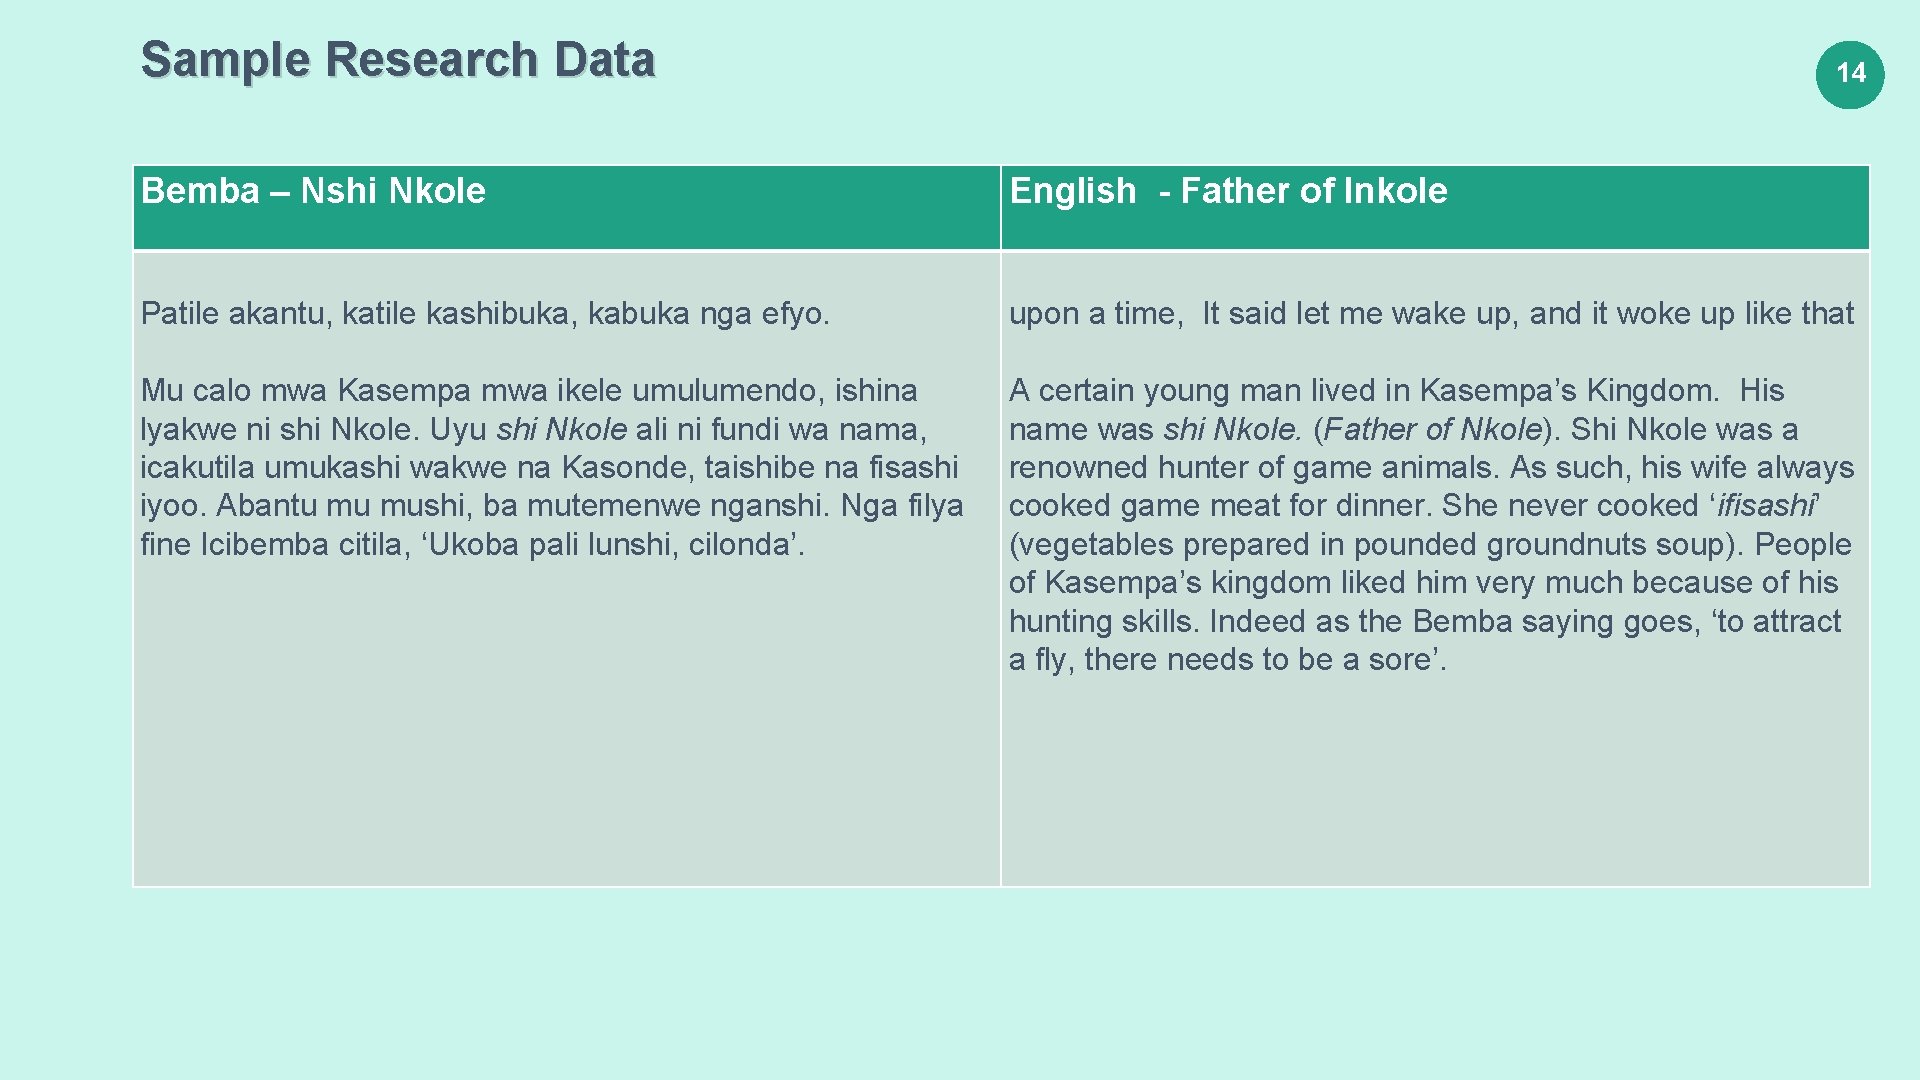 Sample Research Data 14 Bemba – Nshi Nkole English - Father of Inkole Patile